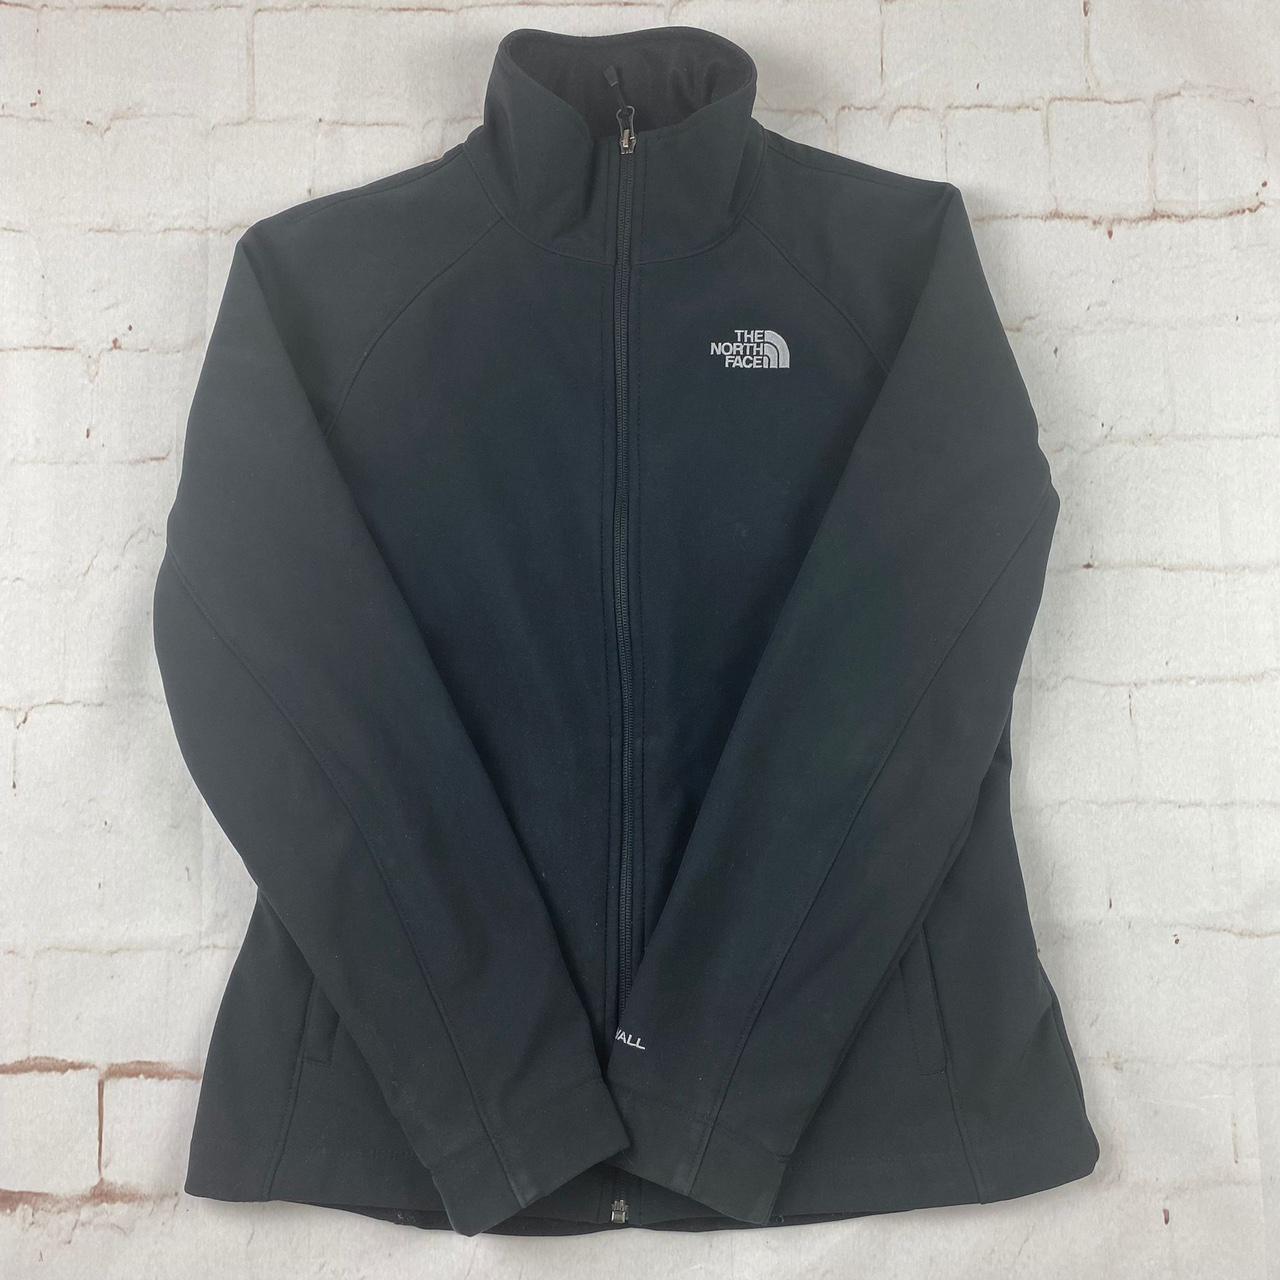 The North Face Windwall soft shell jacket Fleece... - Depop